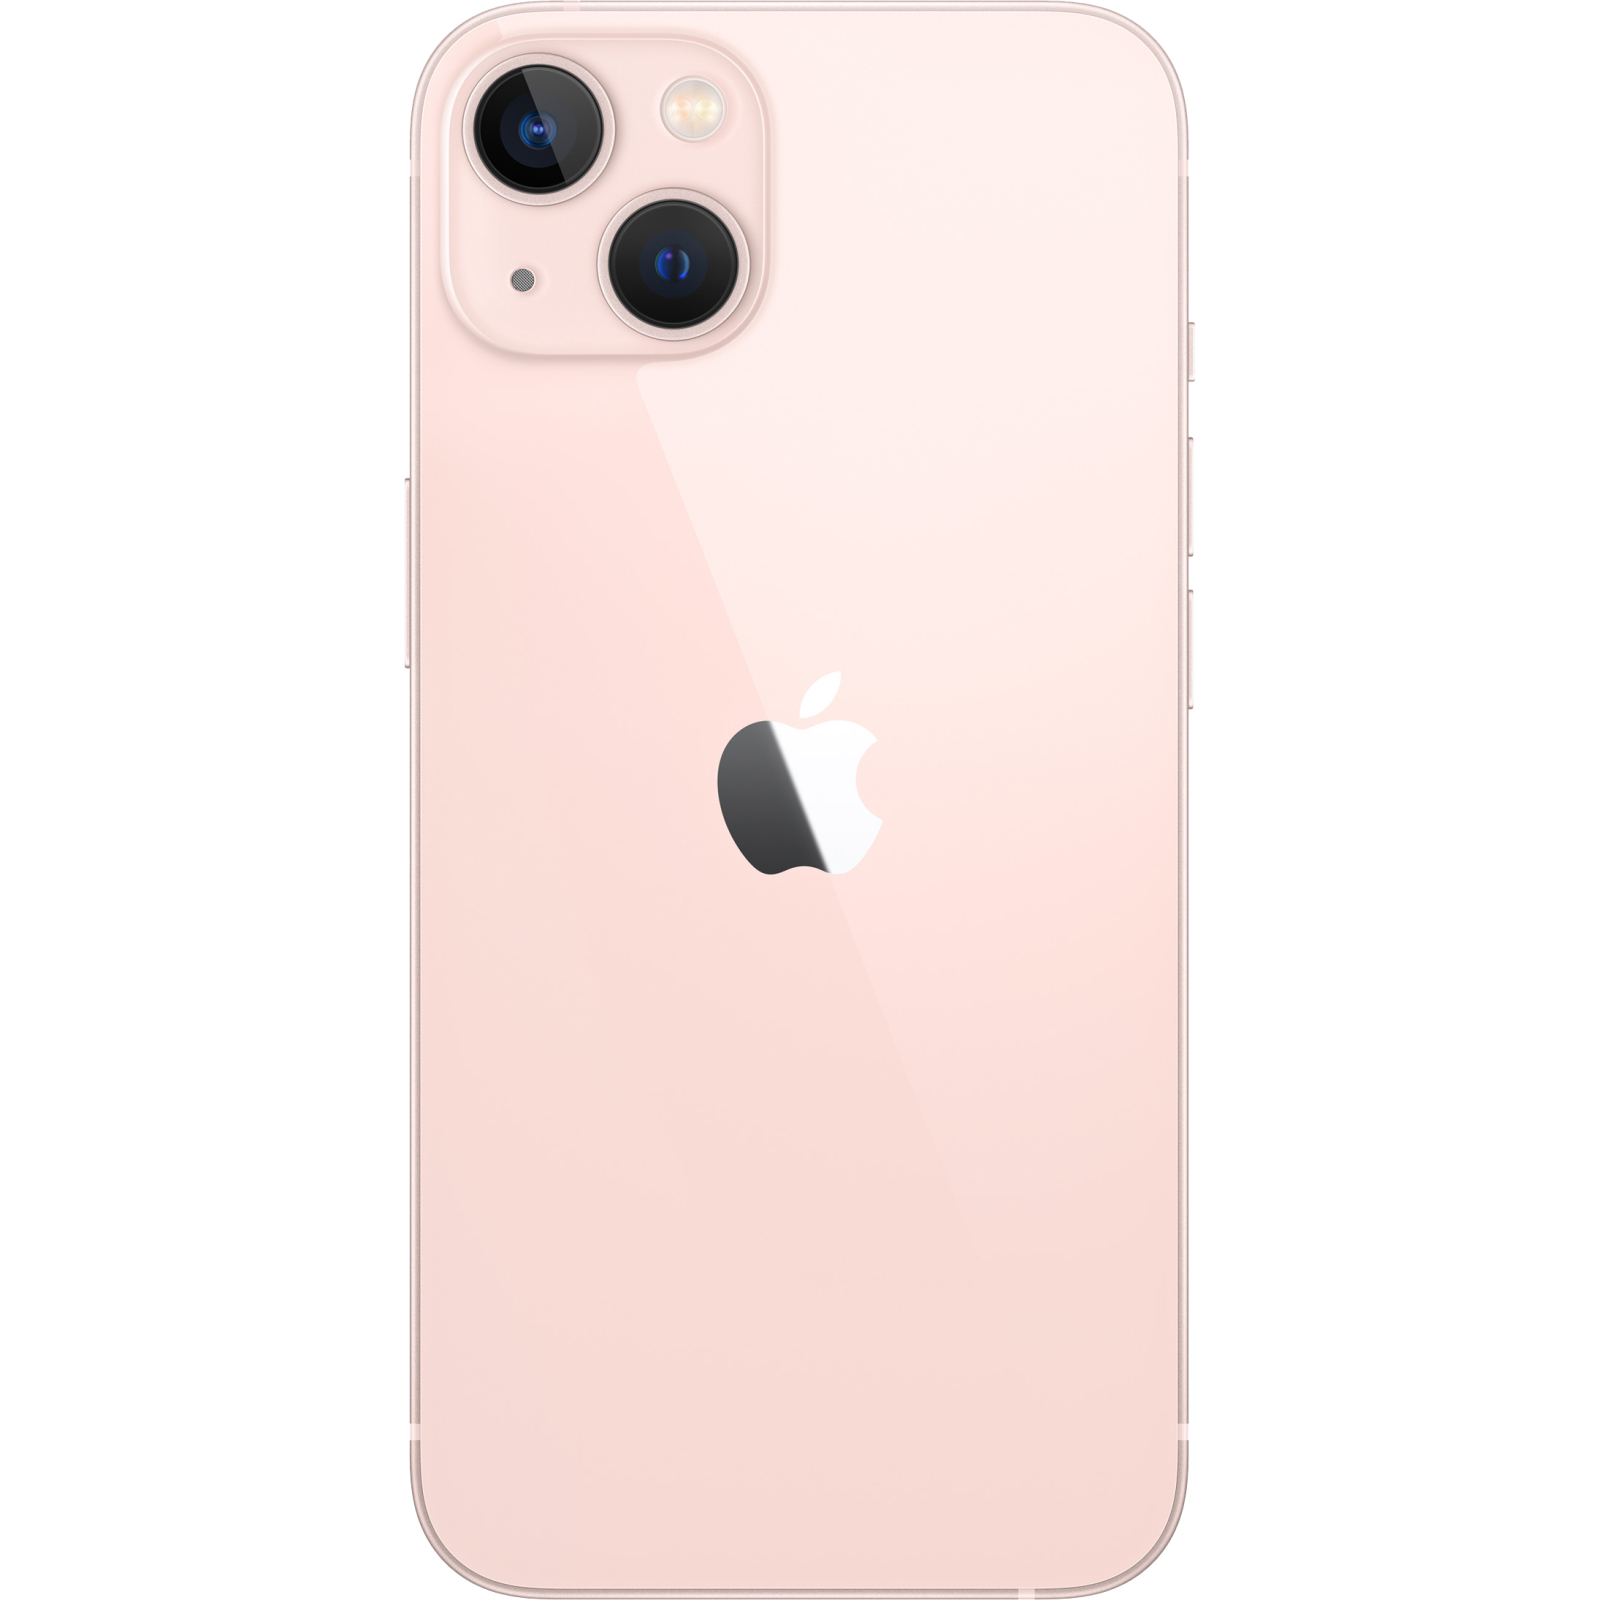 Мобильный телефон Apple iPhone 13 256GB Pink (MLQ83) изображение 2